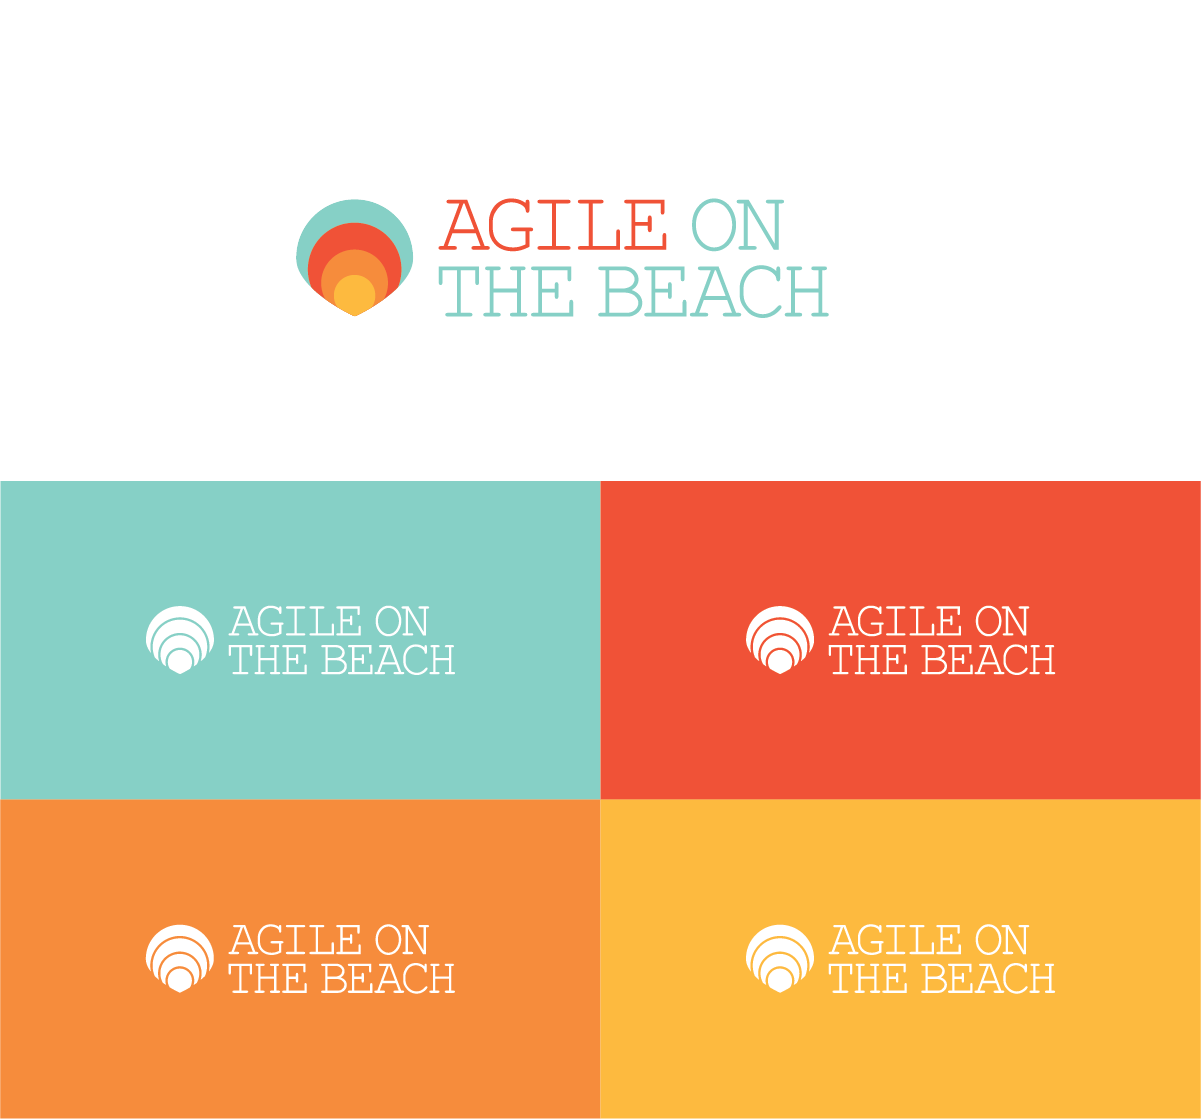 agile on the beach logo design